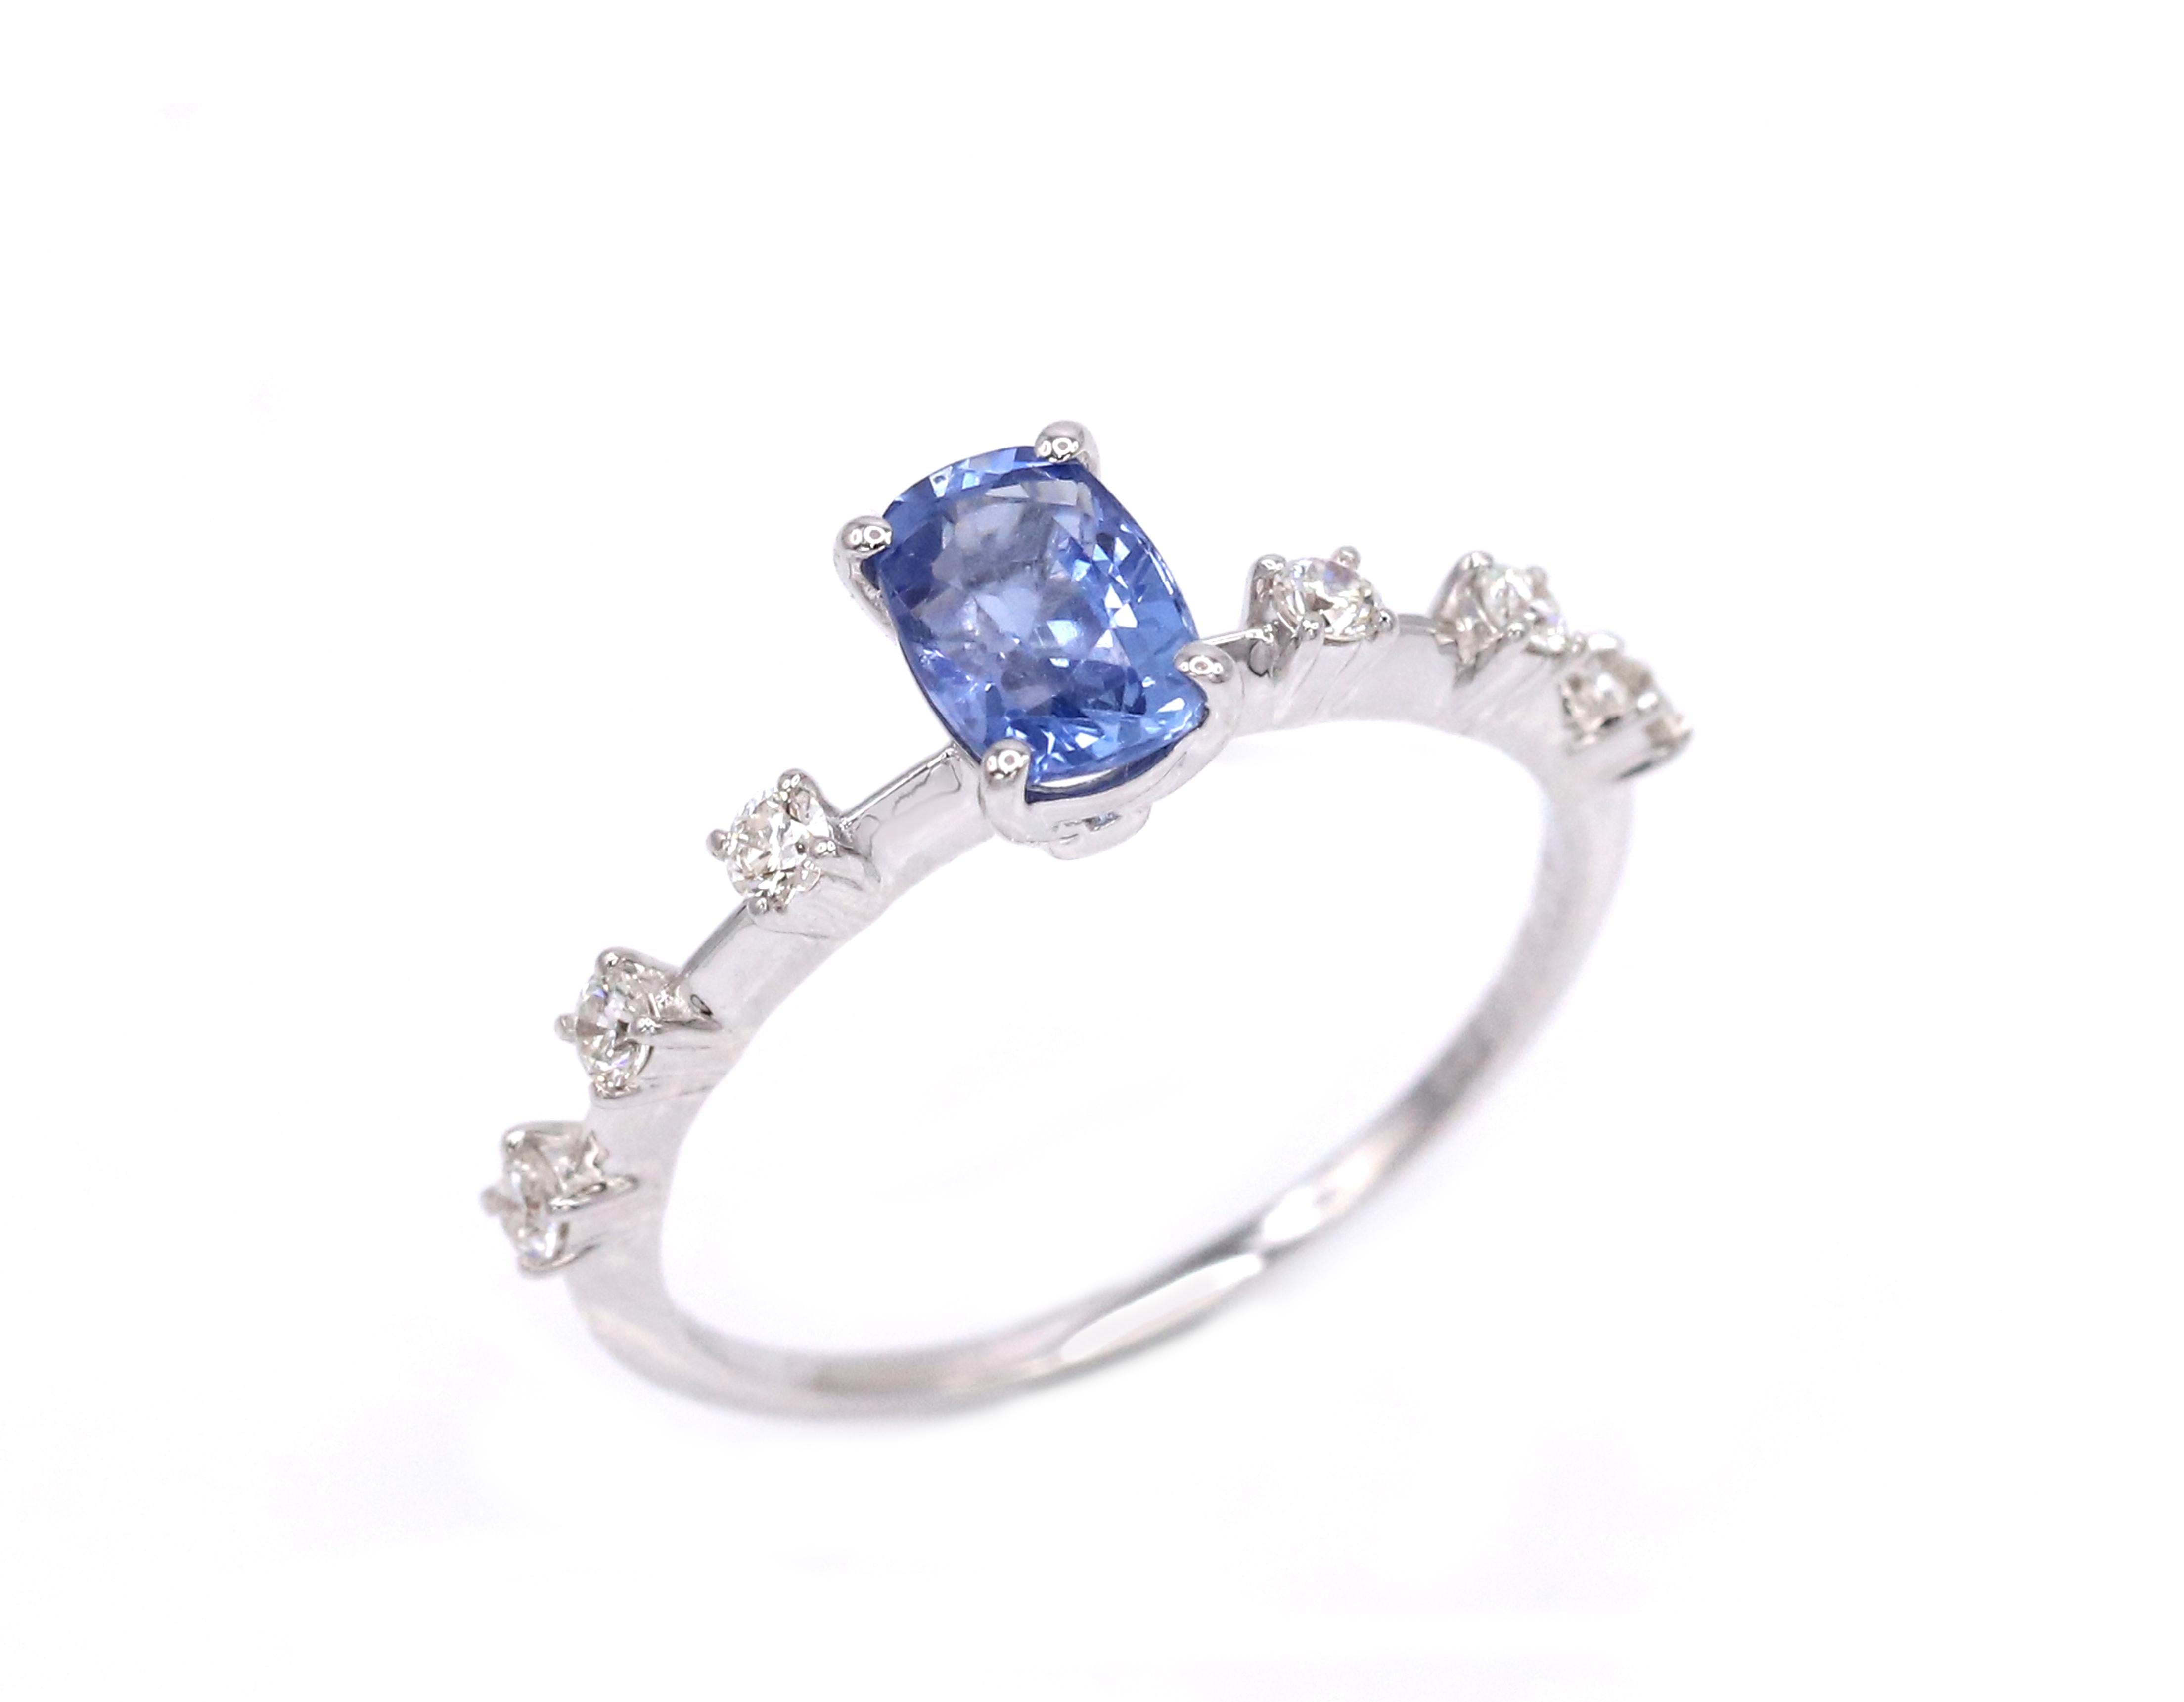 18 Karat Weißgold Ring, makelloser, zeitloser 1,12 Karat blauer Saphir Diamant.
Er kann sowohl als Verlobungsring als auch als Cocktailring angeboten werden.

0,95 Karat blauer unbehandelter Saphir, Herkunft Sri Lanka
6 weiße Diamanten mit